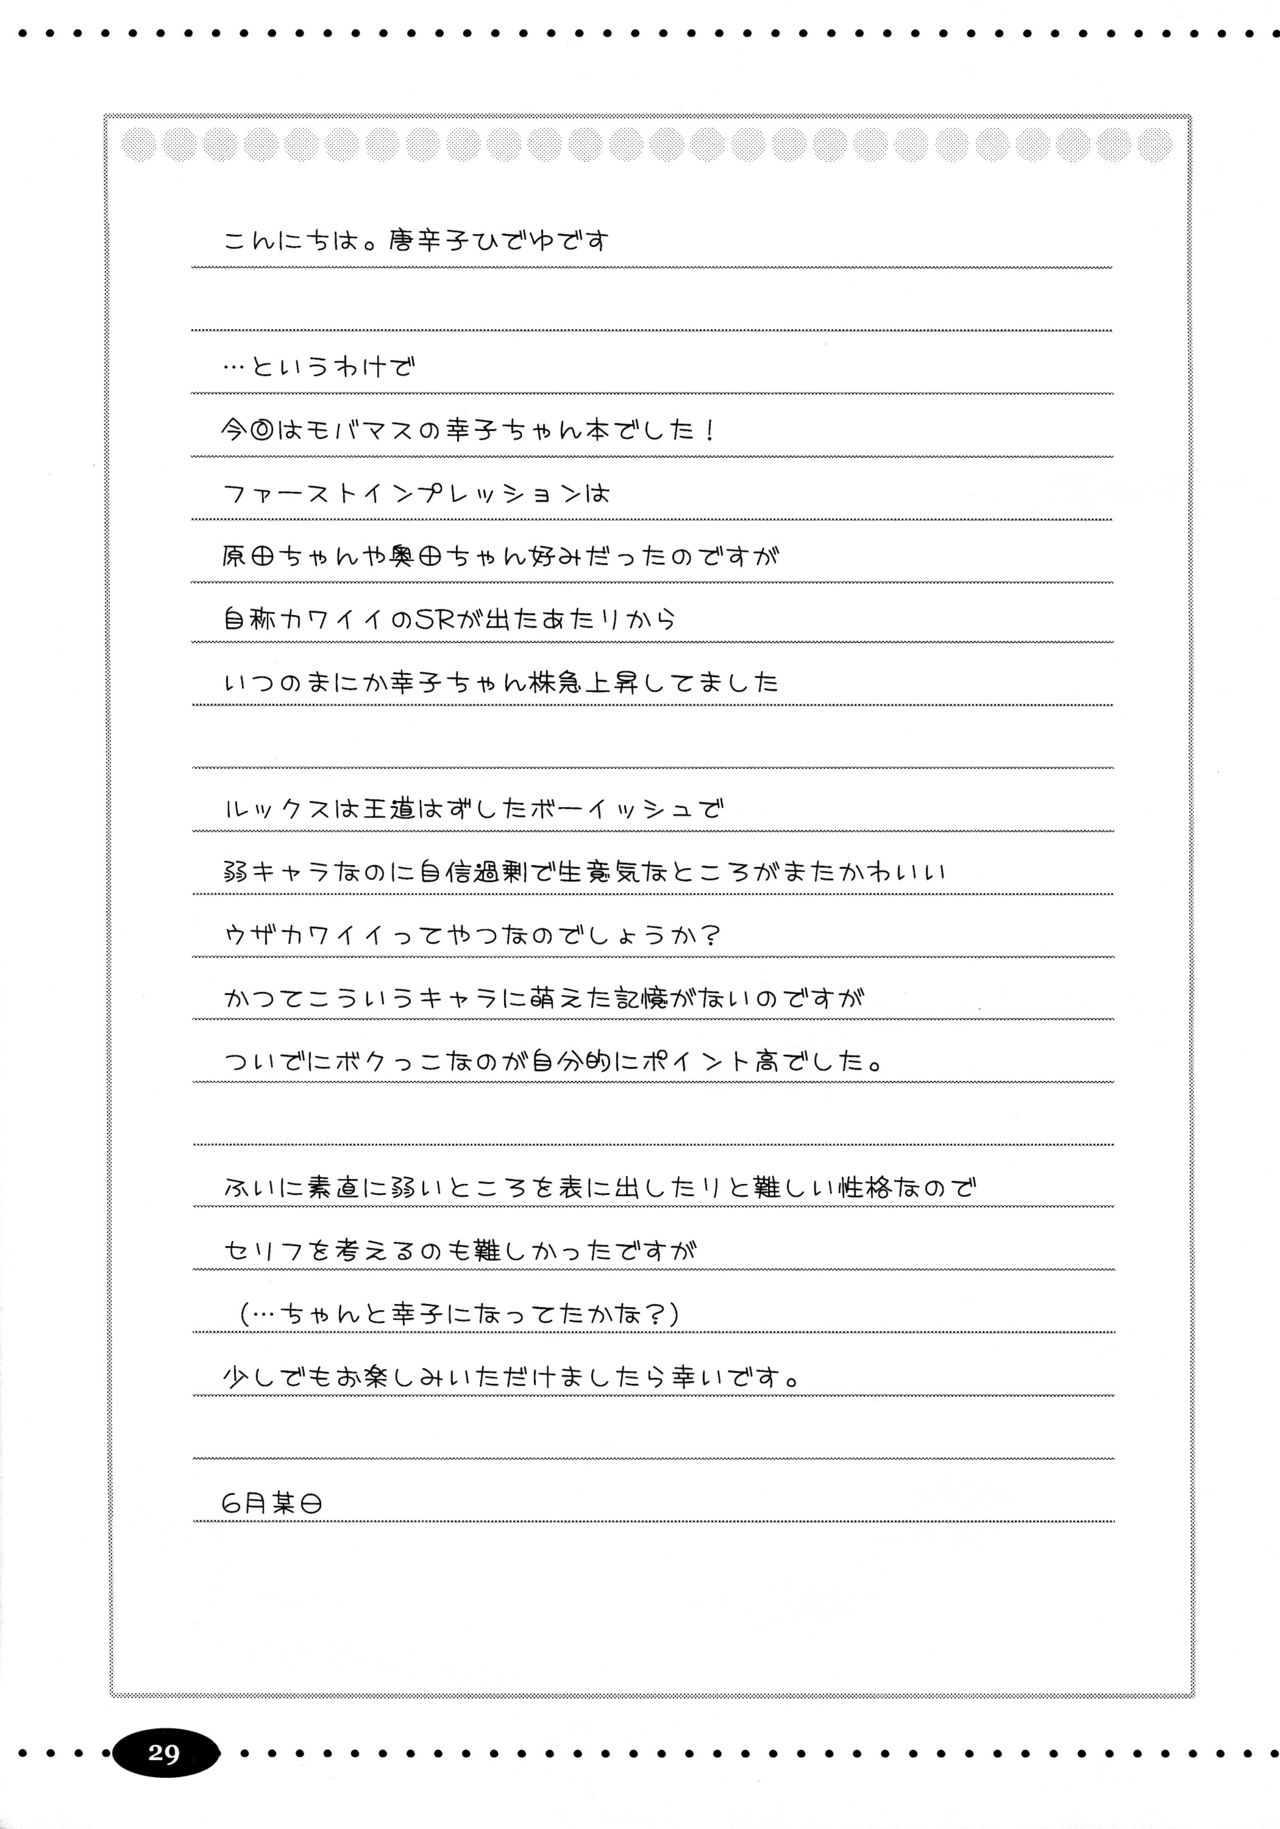 (ComiComi17) [Ngmyu (Tohgarashi Hideyu)] CAWAWA (THE IDOLM@STER CINDERELLA GIRLS) [Chinese] [无毒汉化组] (コミコミ17) [んみゅ (唐辛子ひでゆ)] CAWAWA キャワワ (アイドルマスター シンデレラガールズ) [中国翻訳]